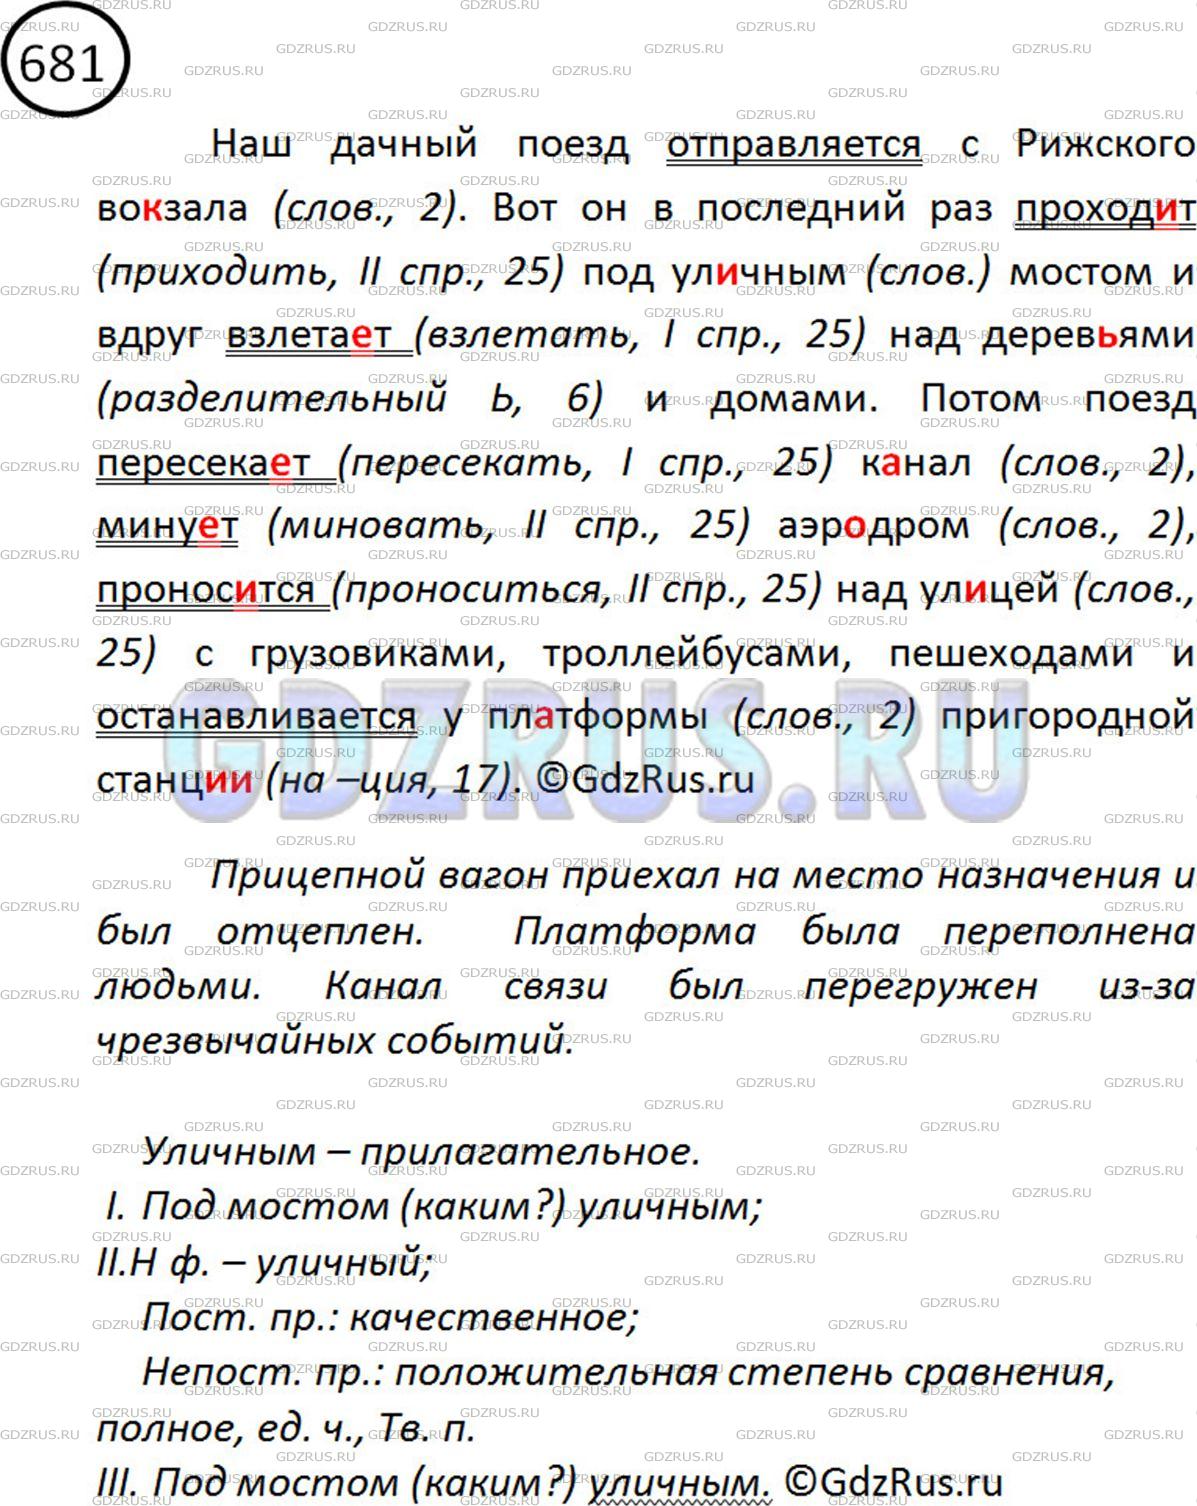 Фото решения 2: ГДЗ по Русскому языку 5 класса: Ладыженская Упр. 681